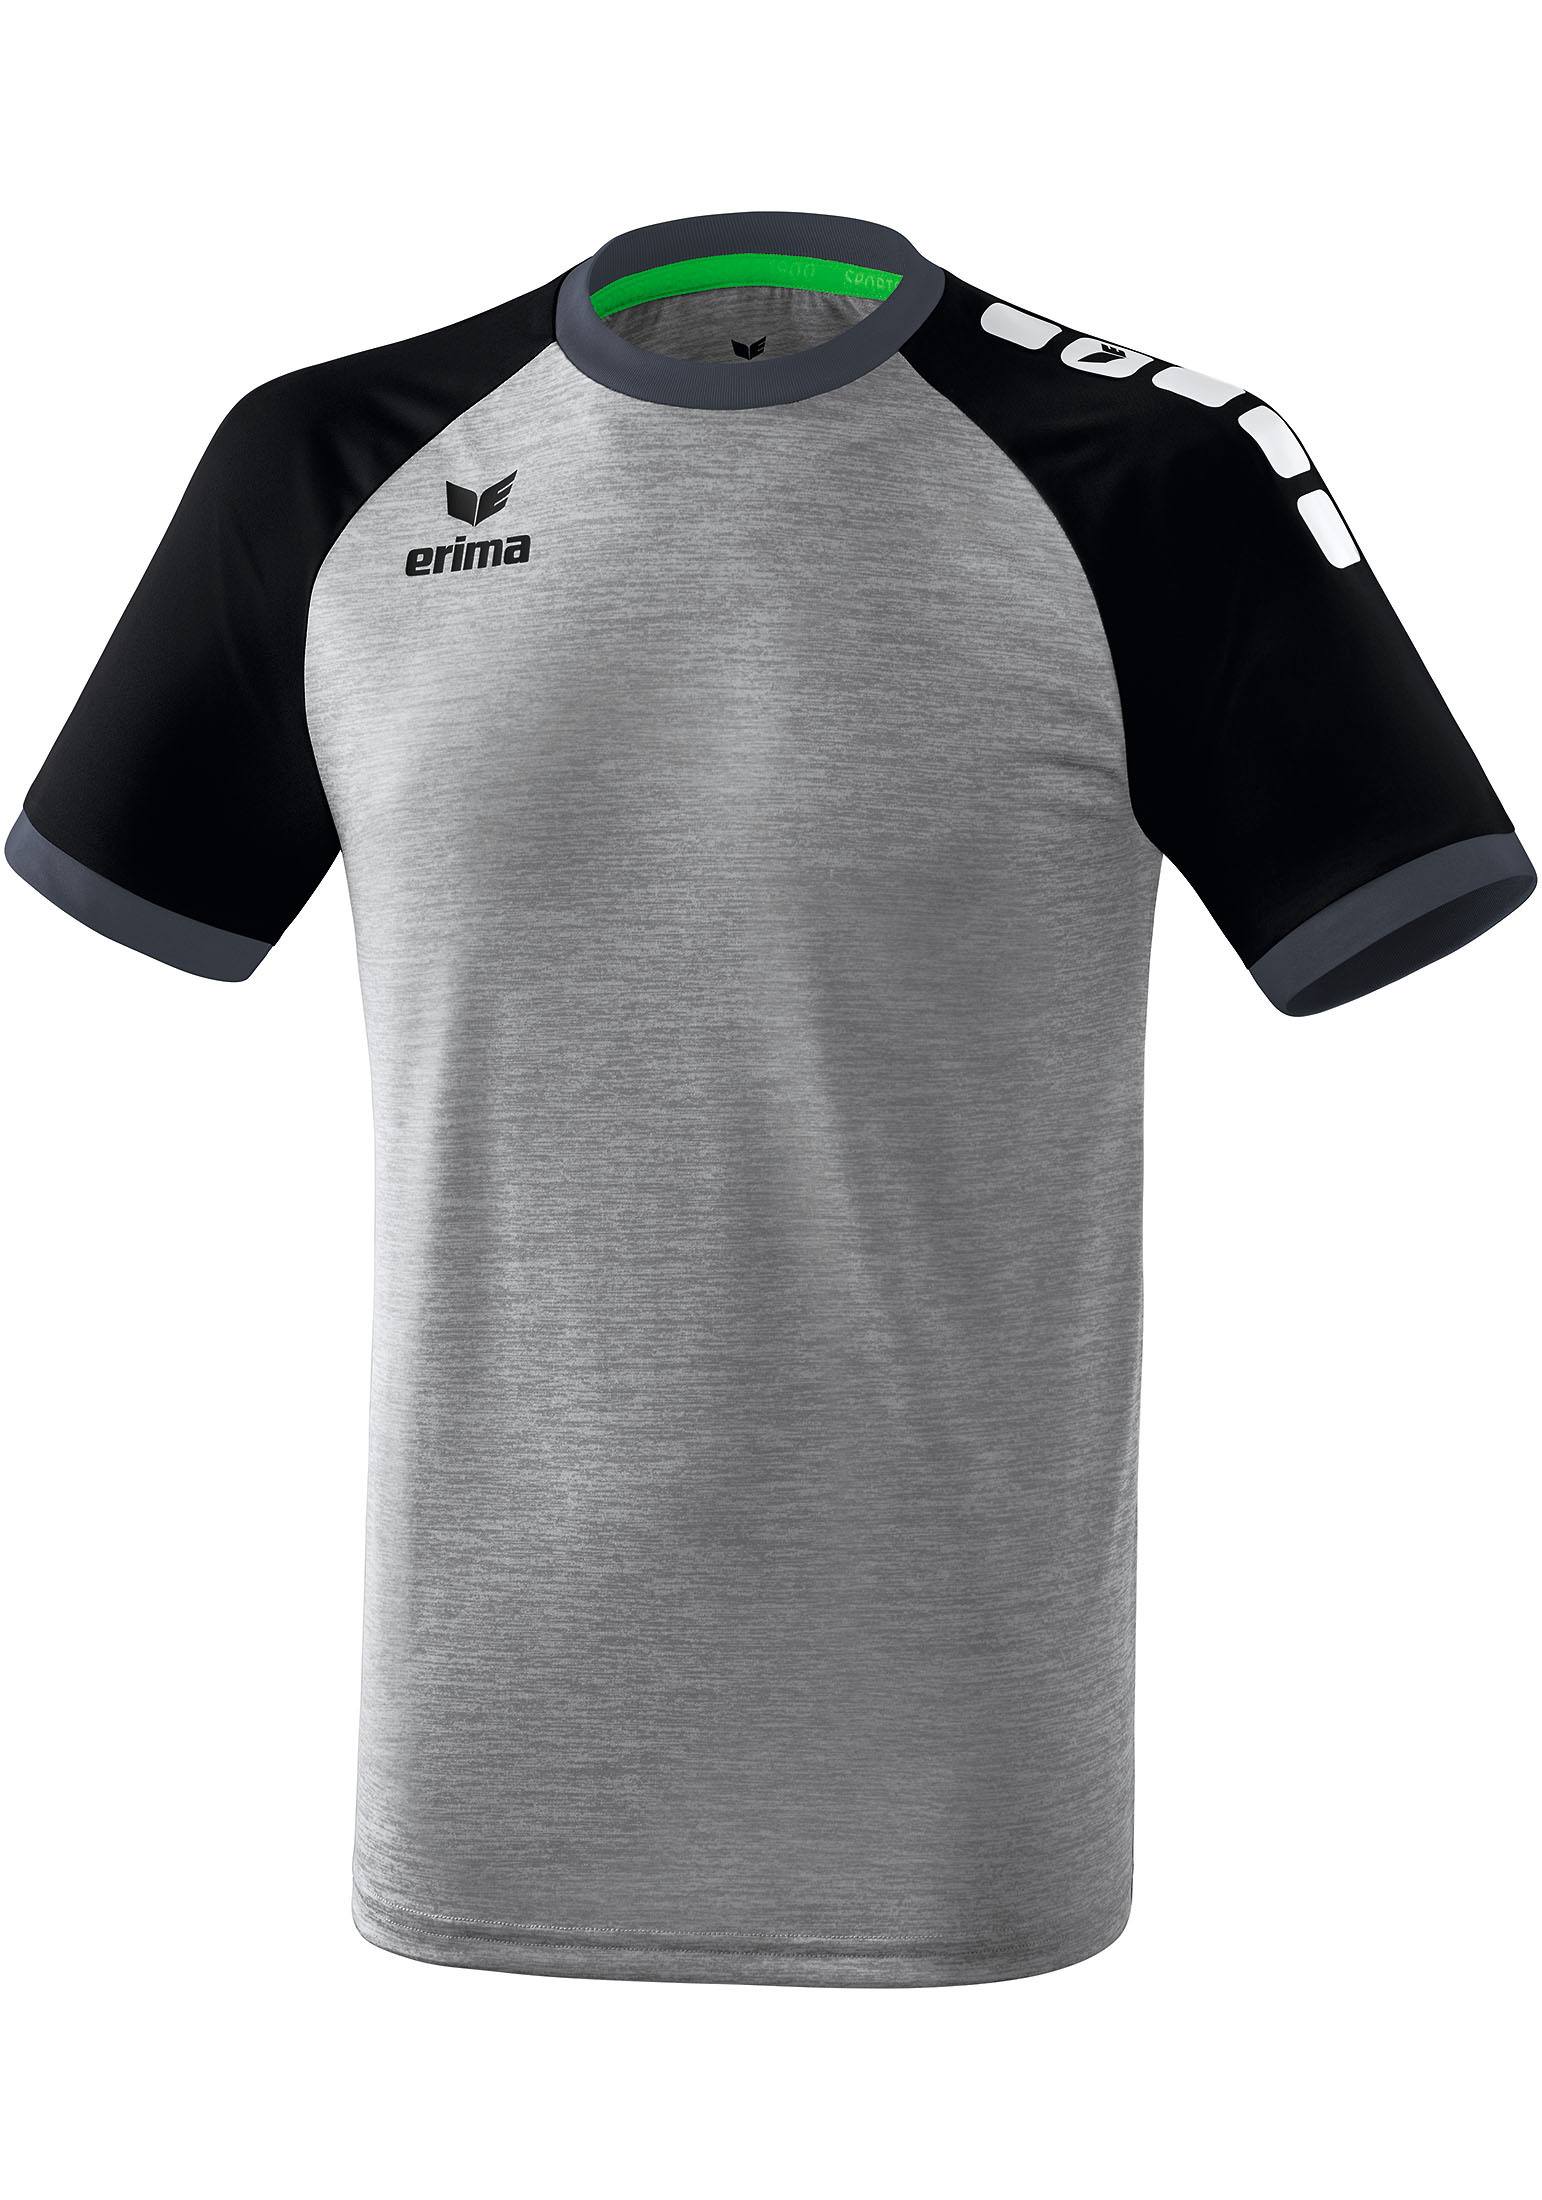 Спортивная футболка erima Zenari 3.0 Trikot, серый меланж/черный/темно серый рубашка erima zenari 3 0 trikot серый меланж черный темно серый